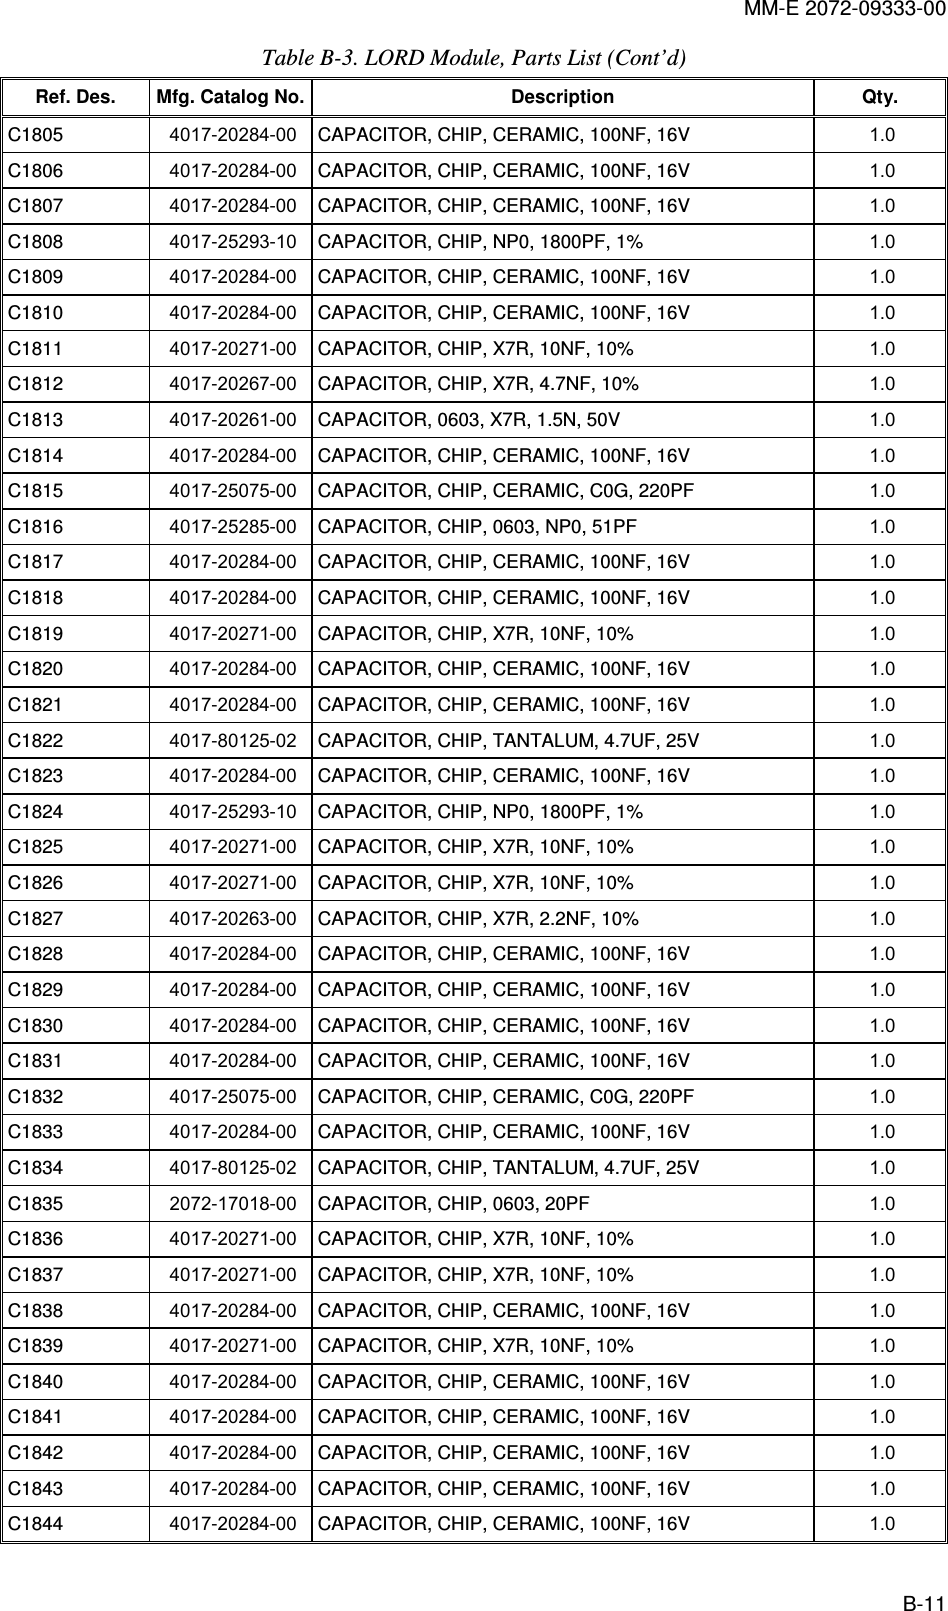 MM-E 2072-09333-00 B-11 Table  B-3. LORD Module, Parts List (Cont’d) Ref. Des.  Mfg. Catalog No. Description  Qty. C1805   4017-20284-00  CAPACITOR, CHIP, CERAMIC, 100NF, 16V  1.0   C1806   4017-20284-00  CAPACITOR, CHIP, CERAMIC, 100NF, 16V  1.0   C1807   4017-20284-00  CAPACITOR, CHIP, CERAMIC, 100NF, 16V  1.0   C1808   4017-25293-10  CAPACITOR, CHIP, NP0, 1800PF, 1%  1.0   C1809   4017-20284-00  CAPACITOR, CHIP, CERAMIC, 100NF, 16V  1.0   C1810   4017-20284-00  CAPACITOR, CHIP, CERAMIC, 100NF, 16V  1.0   C1811   4017-20271-00  CAPACITOR, CHIP, X7R, 10NF, 10%  1.0   C1812   4017-20267-00  CAPACITOR, CHIP, X7R, 4.7NF, 10%  1.0   C1813   4017-20261-00  CAPACITOR, 0603, X7R, 1.5N, 50V  1.0   C1814   4017-20284-00  CAPACITOR, CHIP, CERAMIC, 100NF, 16V  1.0   C1815   4017-25075-00  CAPACITOR, CHIP, CERAMIC, C0G, 220PF  1.0   C1816   4017-25285-00  CAPACITOR, CHIP, 0603, NP0, 51PF  1.0   C1817   4017-20284-00  CAPACITOR, CHIP, CERAMIC, 100NF, 16V  1.0   C1818   4017-20284-00  CAPACITOR, CHIP, CERAMIC, 100NF, 16V  1.0   C1819   4017-20271-00  CAPACITOR, CHIP, X7R, 10NF, 10%  1.0   C1820   4017-20284-00  CAPACITOR, CHIP, CERAMIC, 100NF, 16V  1.0   C1821   4017-20284-00  CAPACITOR, CHIP, CERAMIC, 100NF, 16V  1.0   C1822   4017-80125-02  CAPACITOR, CHIP, TANTALUM, 4.7UF, 25V  1.0   C1823   4017-20284-00  CAPACITOR, CHIP, CERAMIC, 100NF, 16V  1.0   C1824   4017-25293-10  CAPACITOR, CHIP, NP0, 1800PF, 1%  1.0   C1825   4017-20271-00  CAPACITOR, CHIP, X7R, 10NF, 10%  1.0   C1826   4017-20271-00  CAPACITOR, CHIP, X7R, 10NF, 10%  1.0   C1827   4017-20263-00  CAPACITOR, CHIP, X7R, 2.2NF, 10%  1.0   C1828   4017-20284-00  CAPACITOR, CHIP, CERAMIC, 100NF, 16V  1.0   C1829   4017-20284-00  CAPACITOR, CHIP, CERAMIC, 100NF, 16V  1.0   C1830   4017-20284-00  CAPACITOR, CHIP, CERAMIC, 100NF, 16V  1.0   C1831   4017-20284-00  CAPACITOR, CHIP, CERAMIC, 100NF, 16V  1.0   C1832   4017-25075-00  CAPACITOR, CHIP, CERAMIC, C0G, 220PF  1.0   C1833   4017-20284-00  CAPACITOR, CHIP, CERAMIC, 100NF, 16V  1.0   C1834   4017-80125-02  CAPACITOR, CHIP, TANTALUM, 4.7UF, 25V  1.0   C1835   2072-17018-00  CAPACITOR, CHIP, 0603, 20PF  1.0   C1836   4017-20271-00  CAPACITOR, CHIP, X7R, 10NF, 10%  1.0   C1837   4017-20271-00  CAPACITOR, CHIP, X7R, 10NF, 10%  1.0   C1838   4017-20284-00  CAPACITOR, CHIP, CERAMIC, 100NF, 16V  1.0   C1839   4017-20271-00  CAPACITOR, CHIP, X7R, 10NF, 10%  1.0   C1840   4017-20284-00  CAPACITOR, CHIP, CERAMIC, 100NF, 16V  1.0   C1841   4017-20284-00  CAPACITOR, CHIP, CERAMIC, 100NF, 16V  1.0   C1842   4017-20284-00  CAPACITOR, CHIP, CERAMIC, 100NF, 16V  1.0   C1843   4017-20284-00  CAPACITOR, CHIP, CERAMIC, 100NF, 16V  1.0   C1844   4017-20284-00  CAPACITOR, CHIP, CERAMIC, 100NF, 16V  1.0   